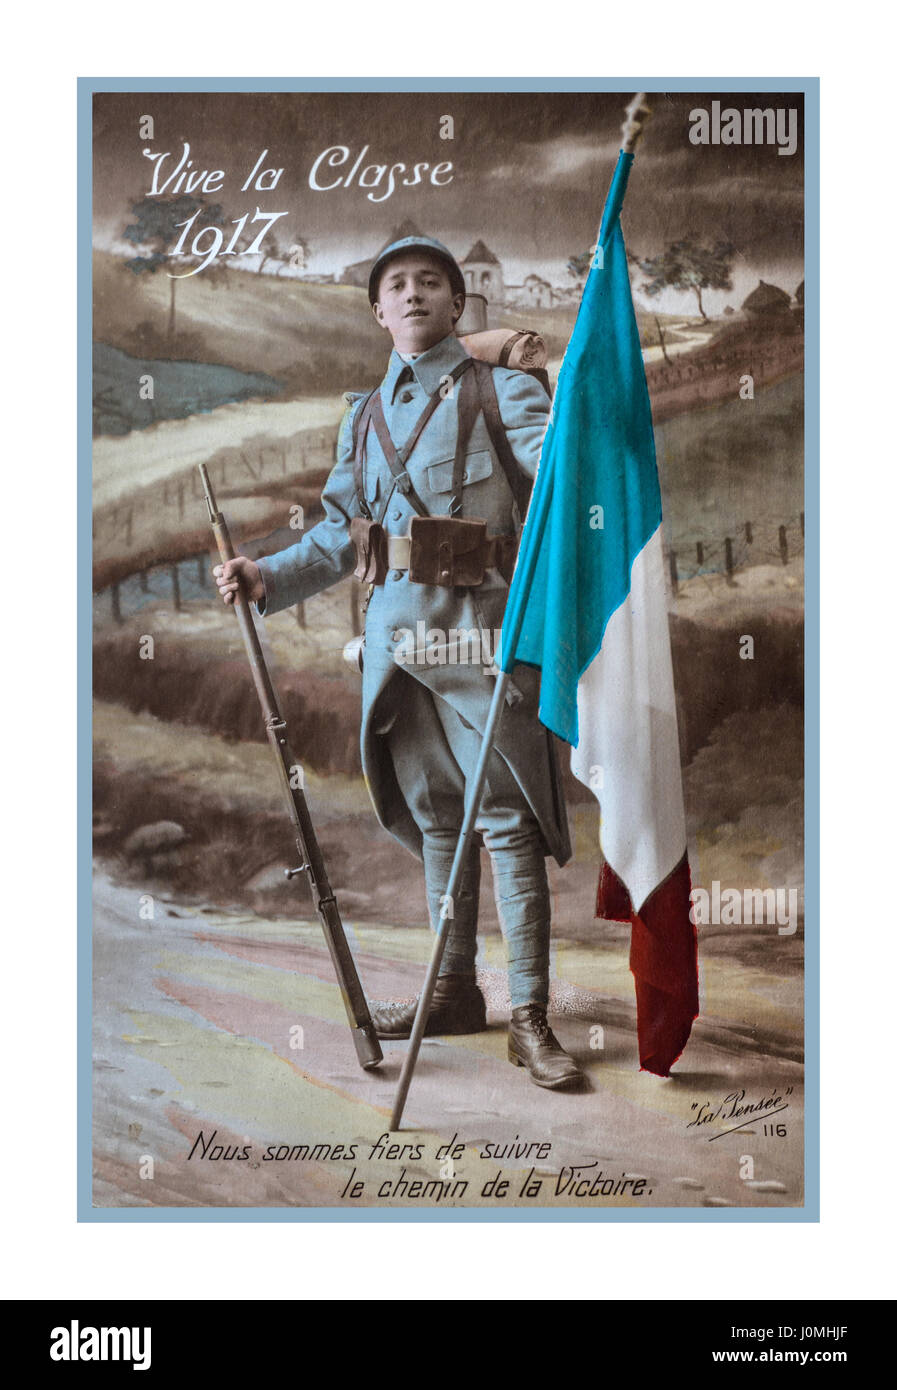 WW1 1914-1918 cartolina di propaganda con la fanteria francese soldier holding bandiera tricolore datata 1917 dalla battlefront in Francia, "Viva la classe di 1917...siamo orgogliosi di seguire il percorso della vittoria.". Foto Stock